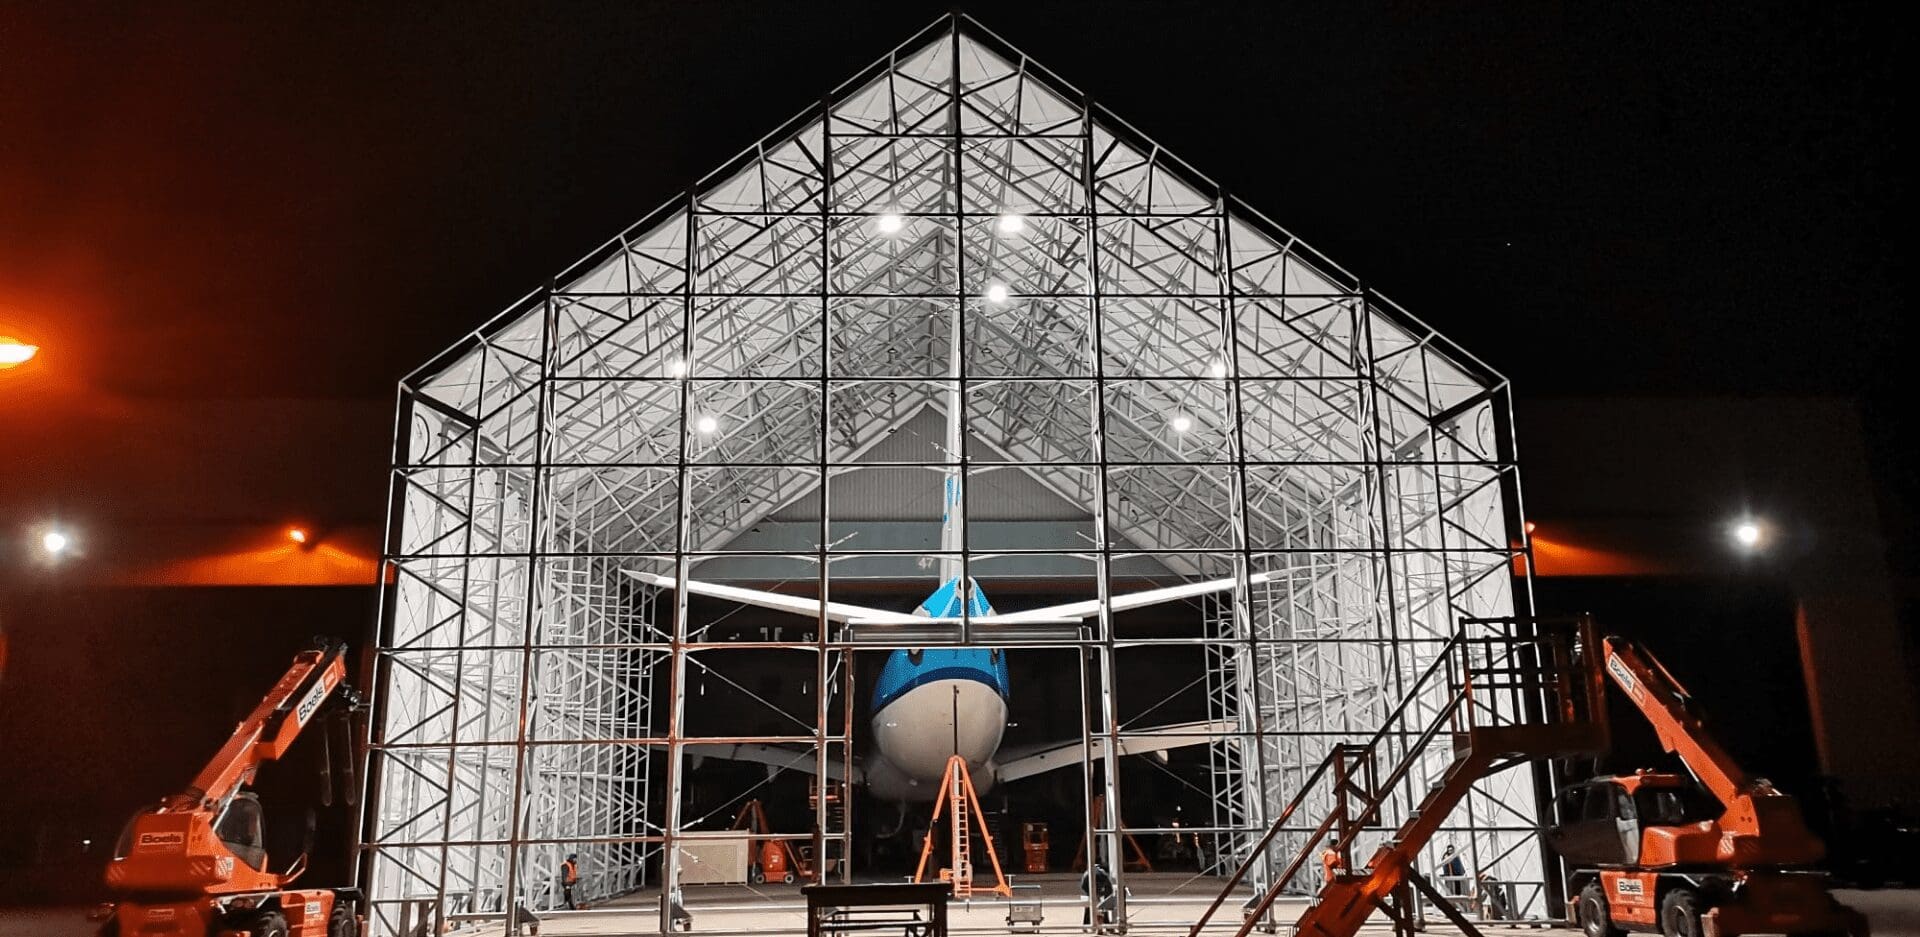 Aviolanda: Eine bewegliche Lösung für die Wartung größerer Flugzeuge